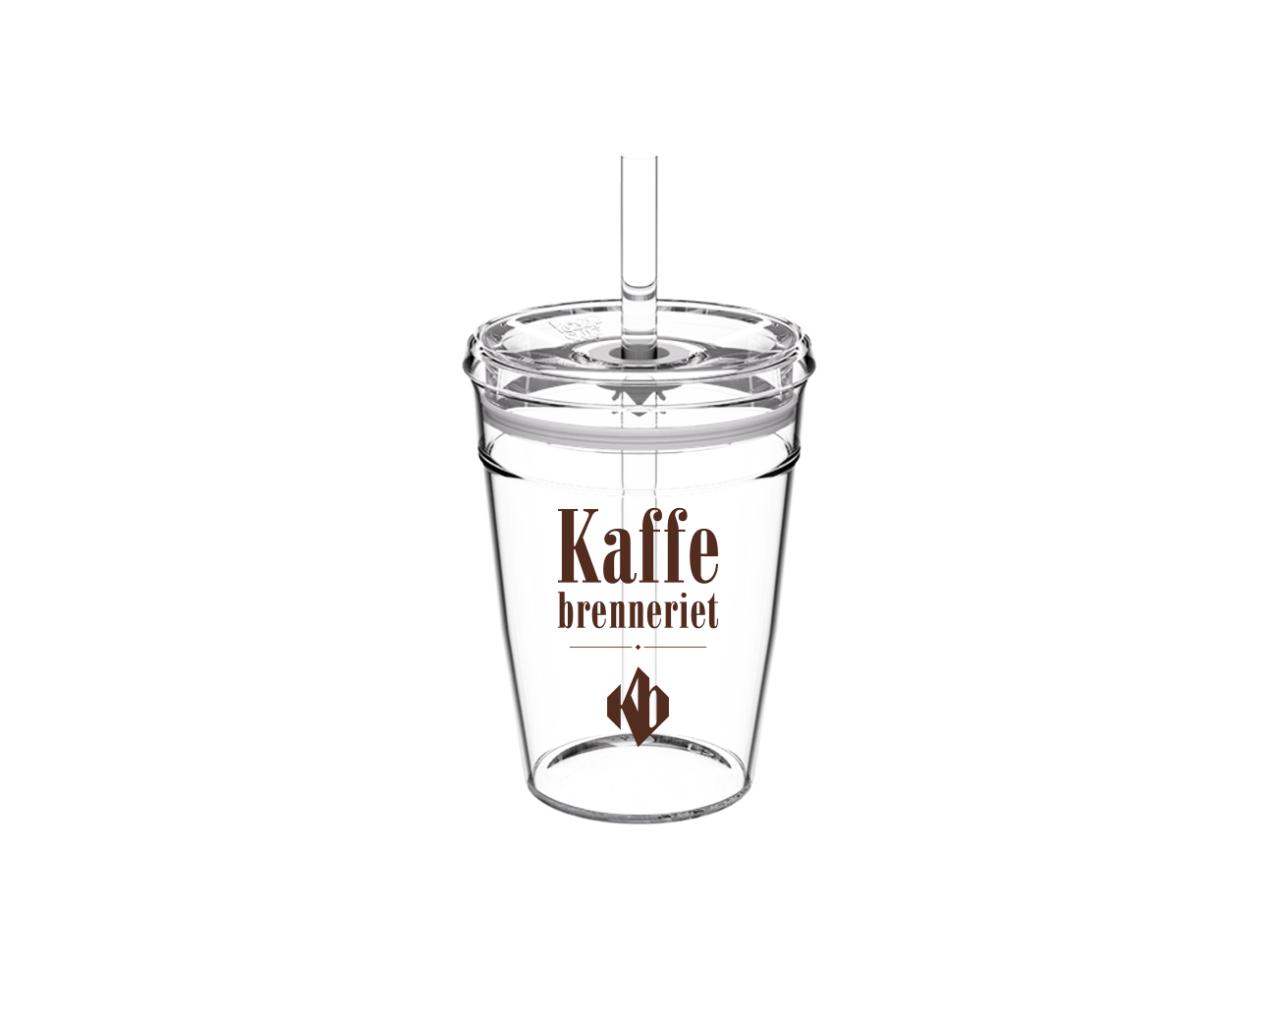 CoolCup Kaffebrenneriet logo